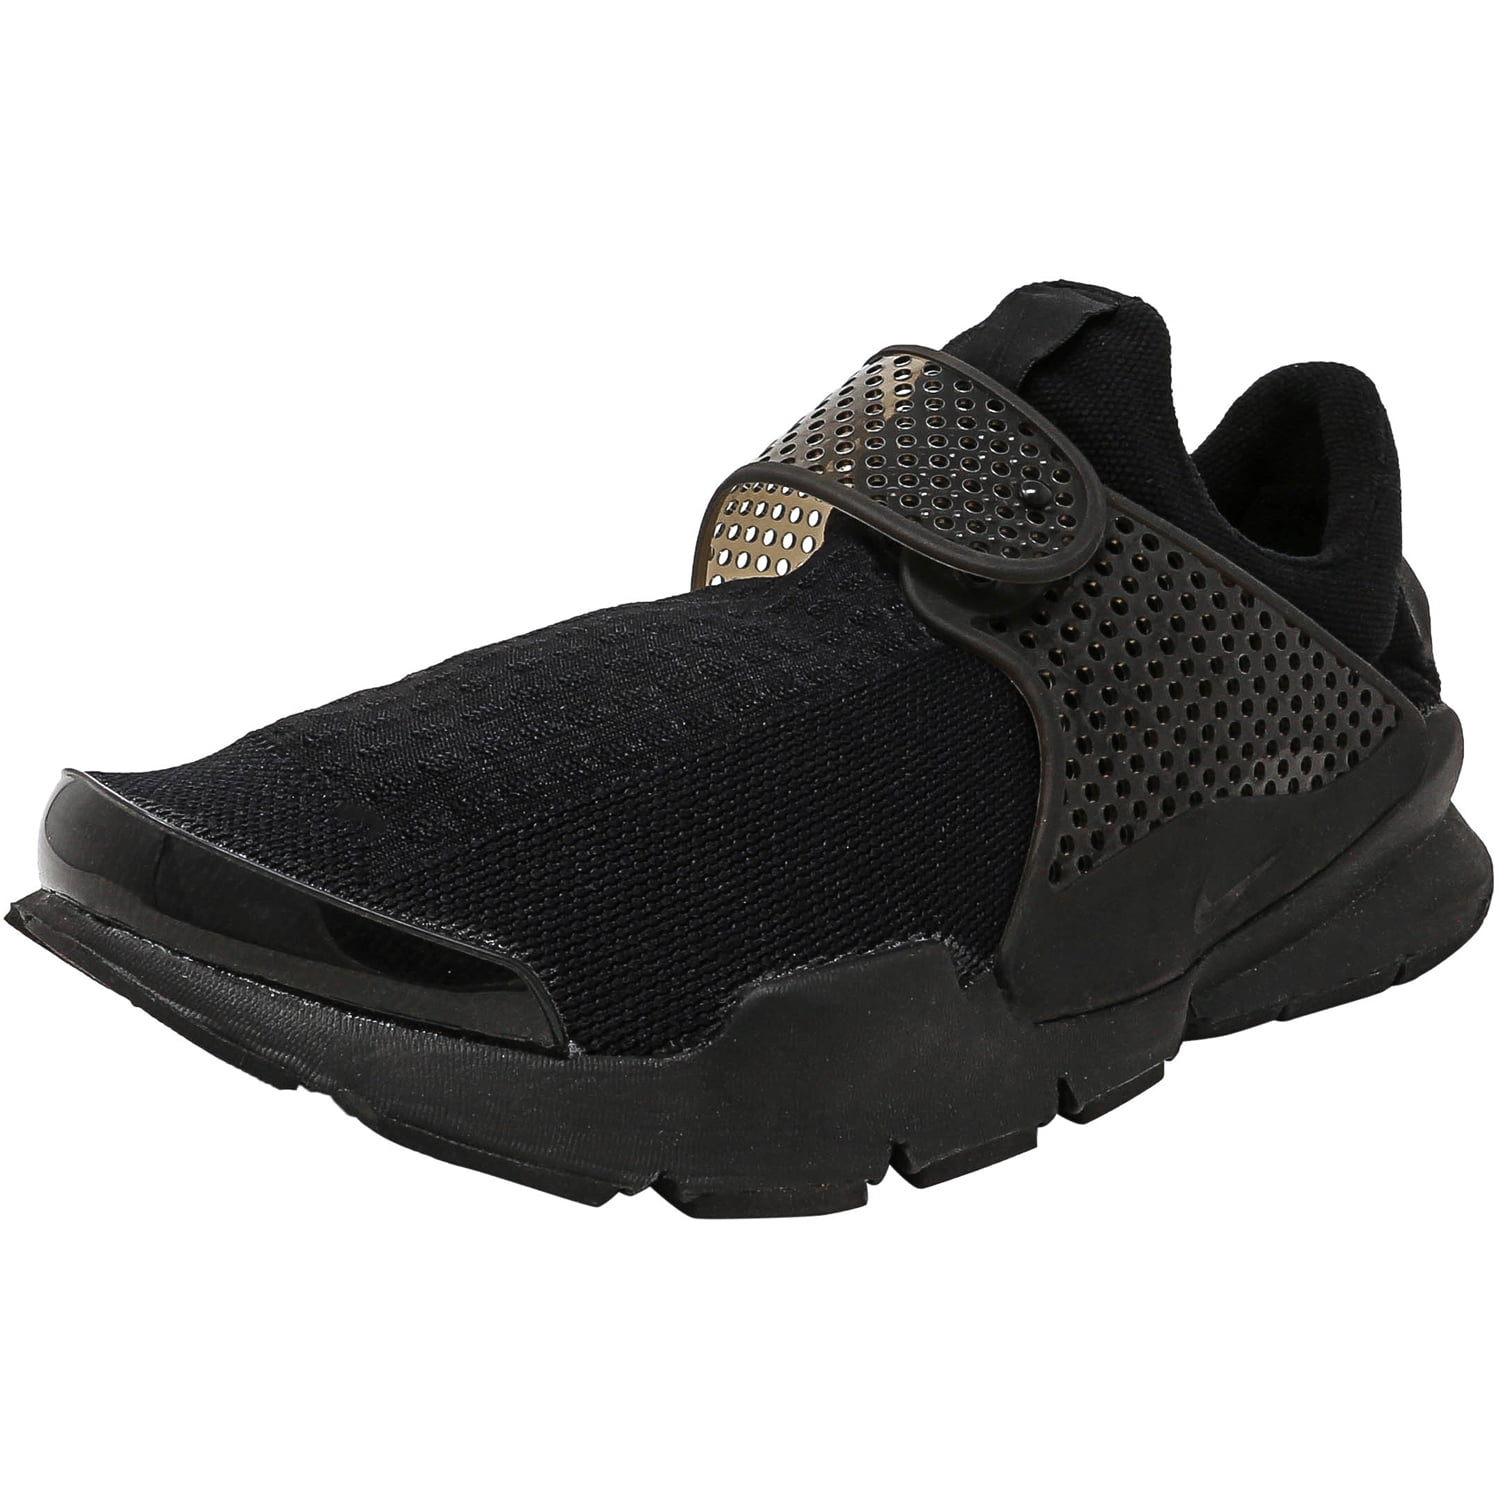 Nike Men's Sock Dart Black / Black-Volt Ankle-High Running Shoe - 11M ...